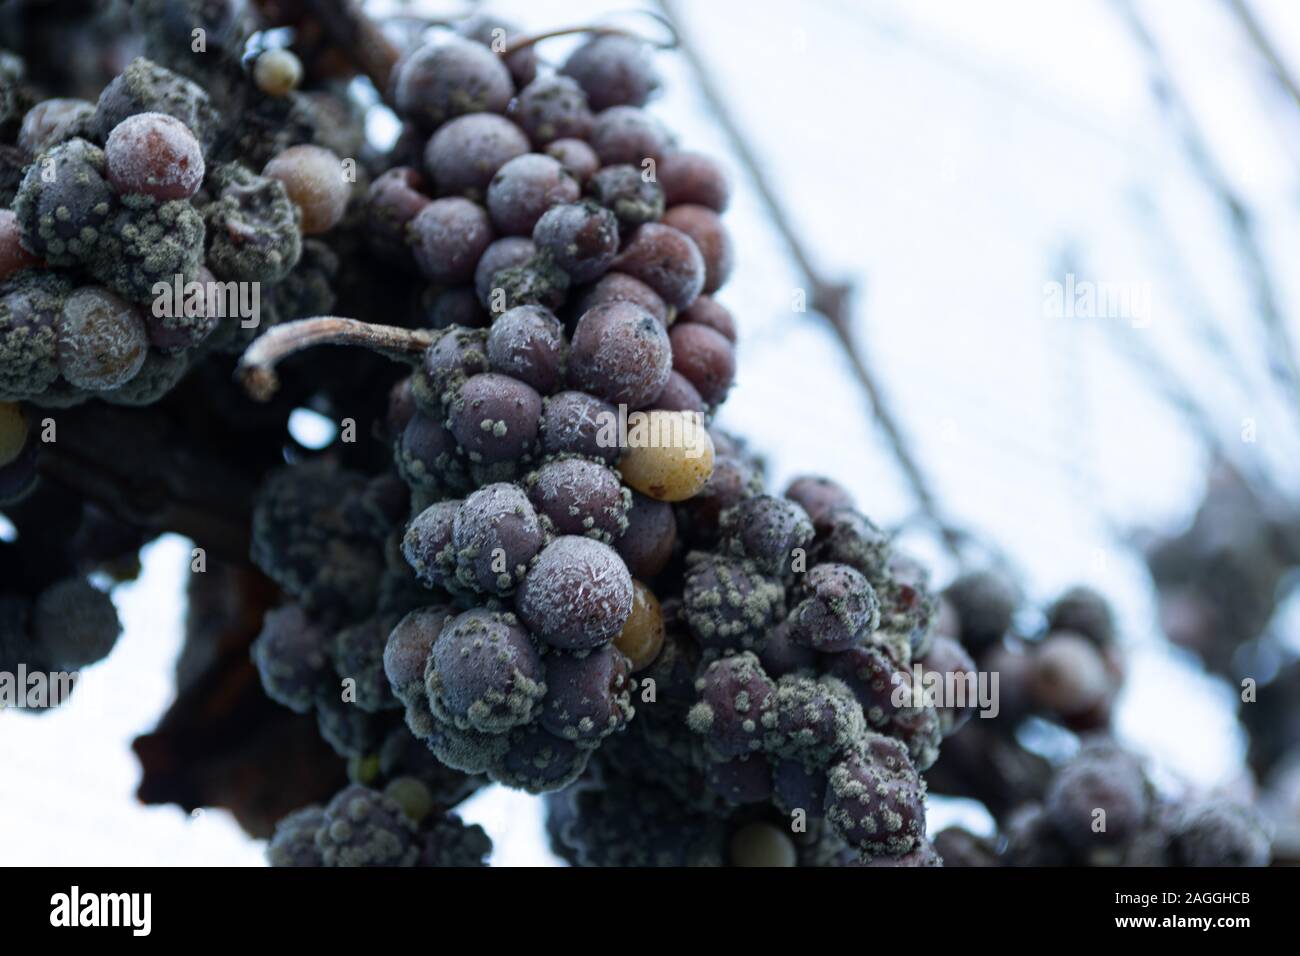 Ice Wine Grapes on vine Stock Photo